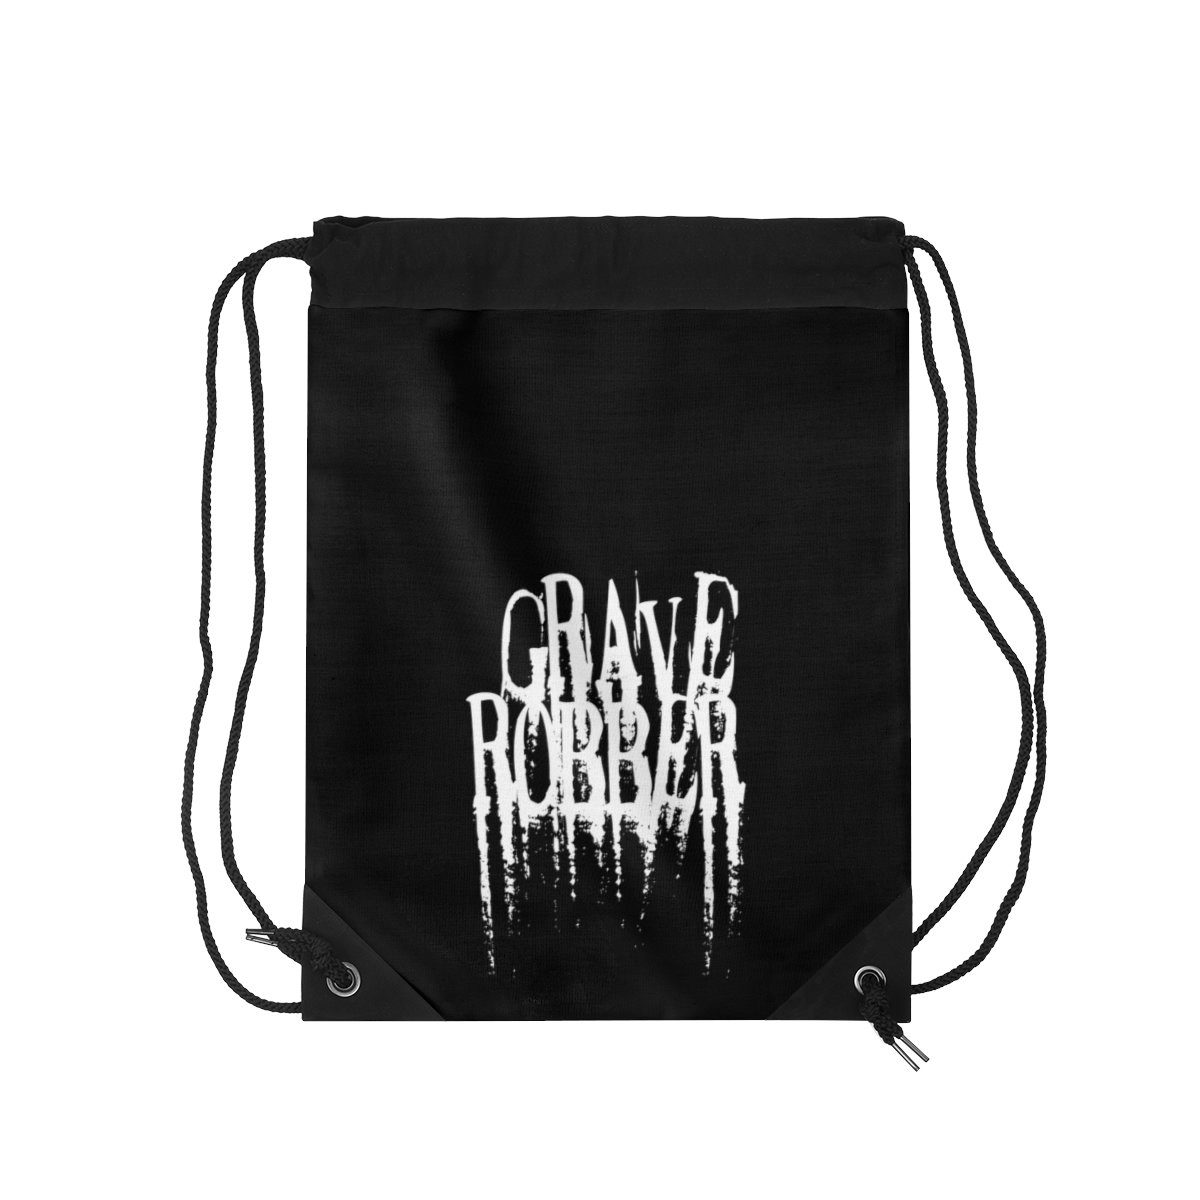 Grave Robber Drawstring Bag